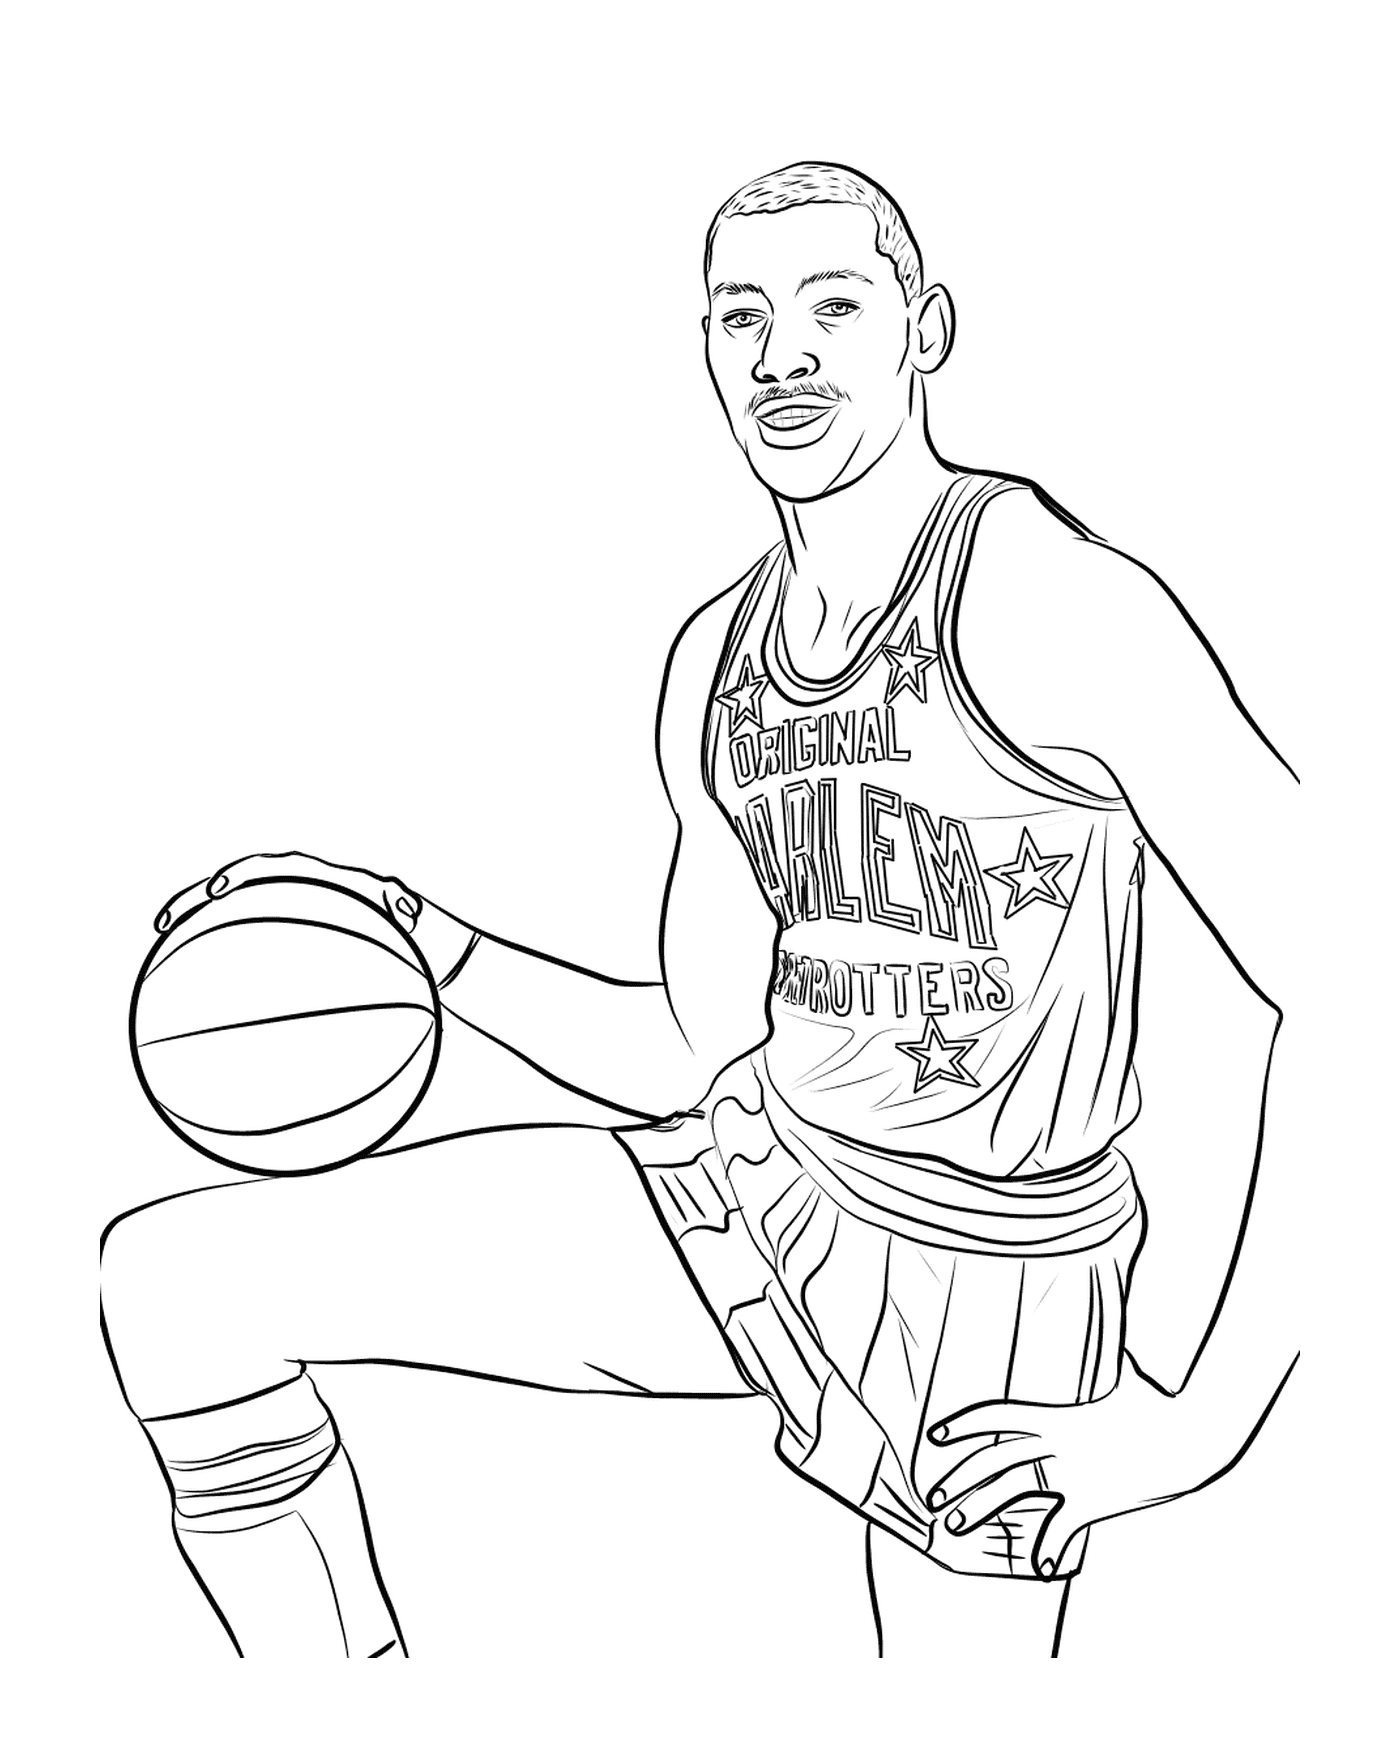  Wilt Chamberlain, basketball player 